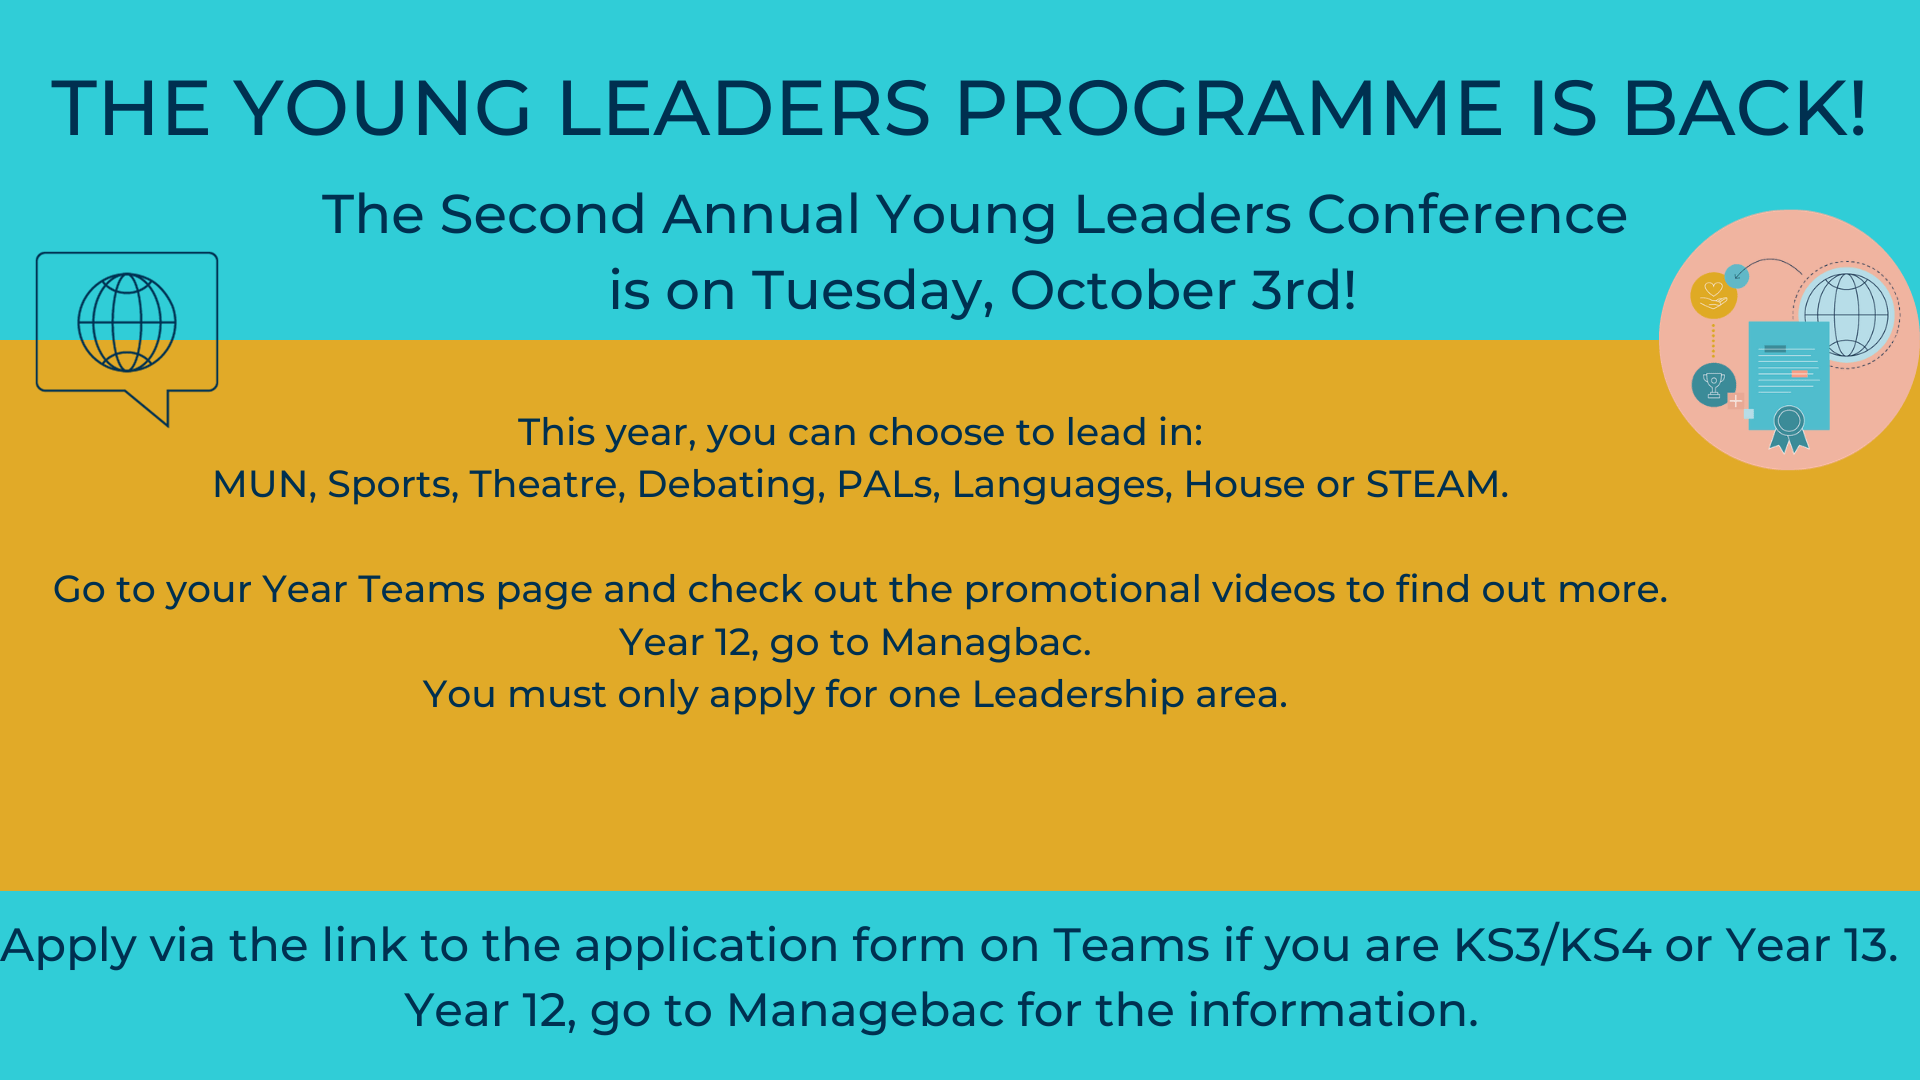 Young Leaders Programme - Young Leaders Programme